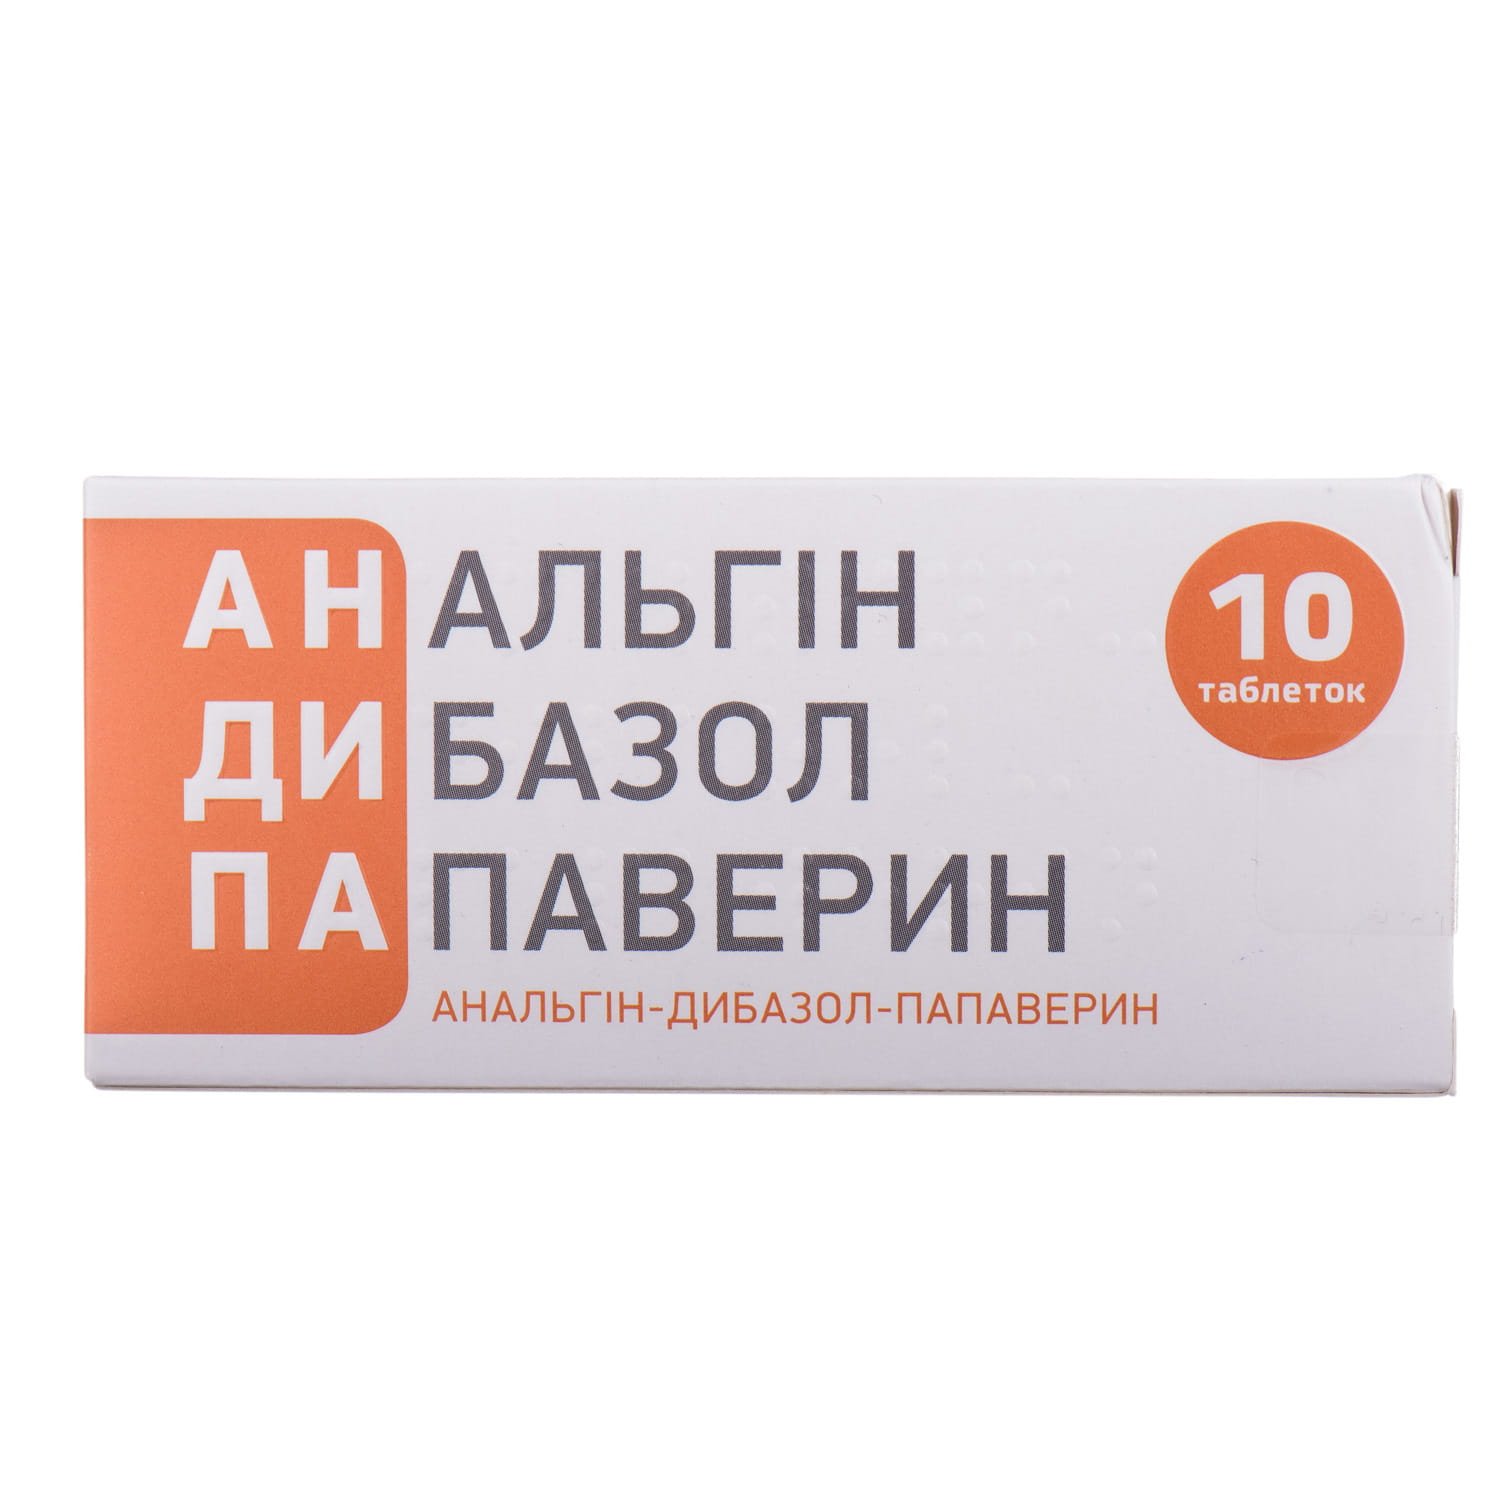 Анальгін - Дибазол - Папаверин таблетки, 10 шт.: інструкція, ціна .